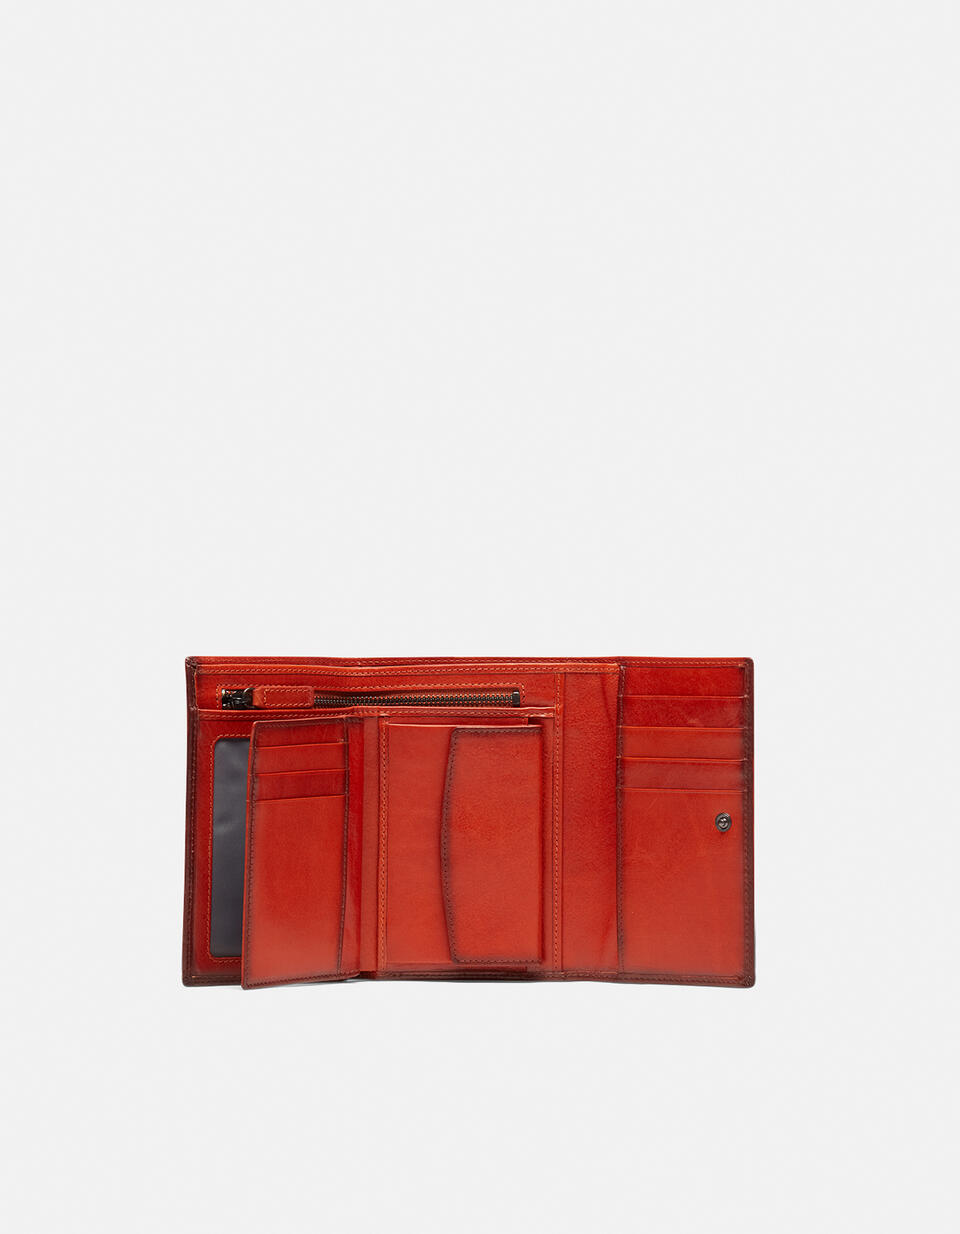 Warm and colour portafoglio medio anti-rfid in cuoio bifold con bordo effetto bruciato ARANCIO Cuoieria Fiorentina